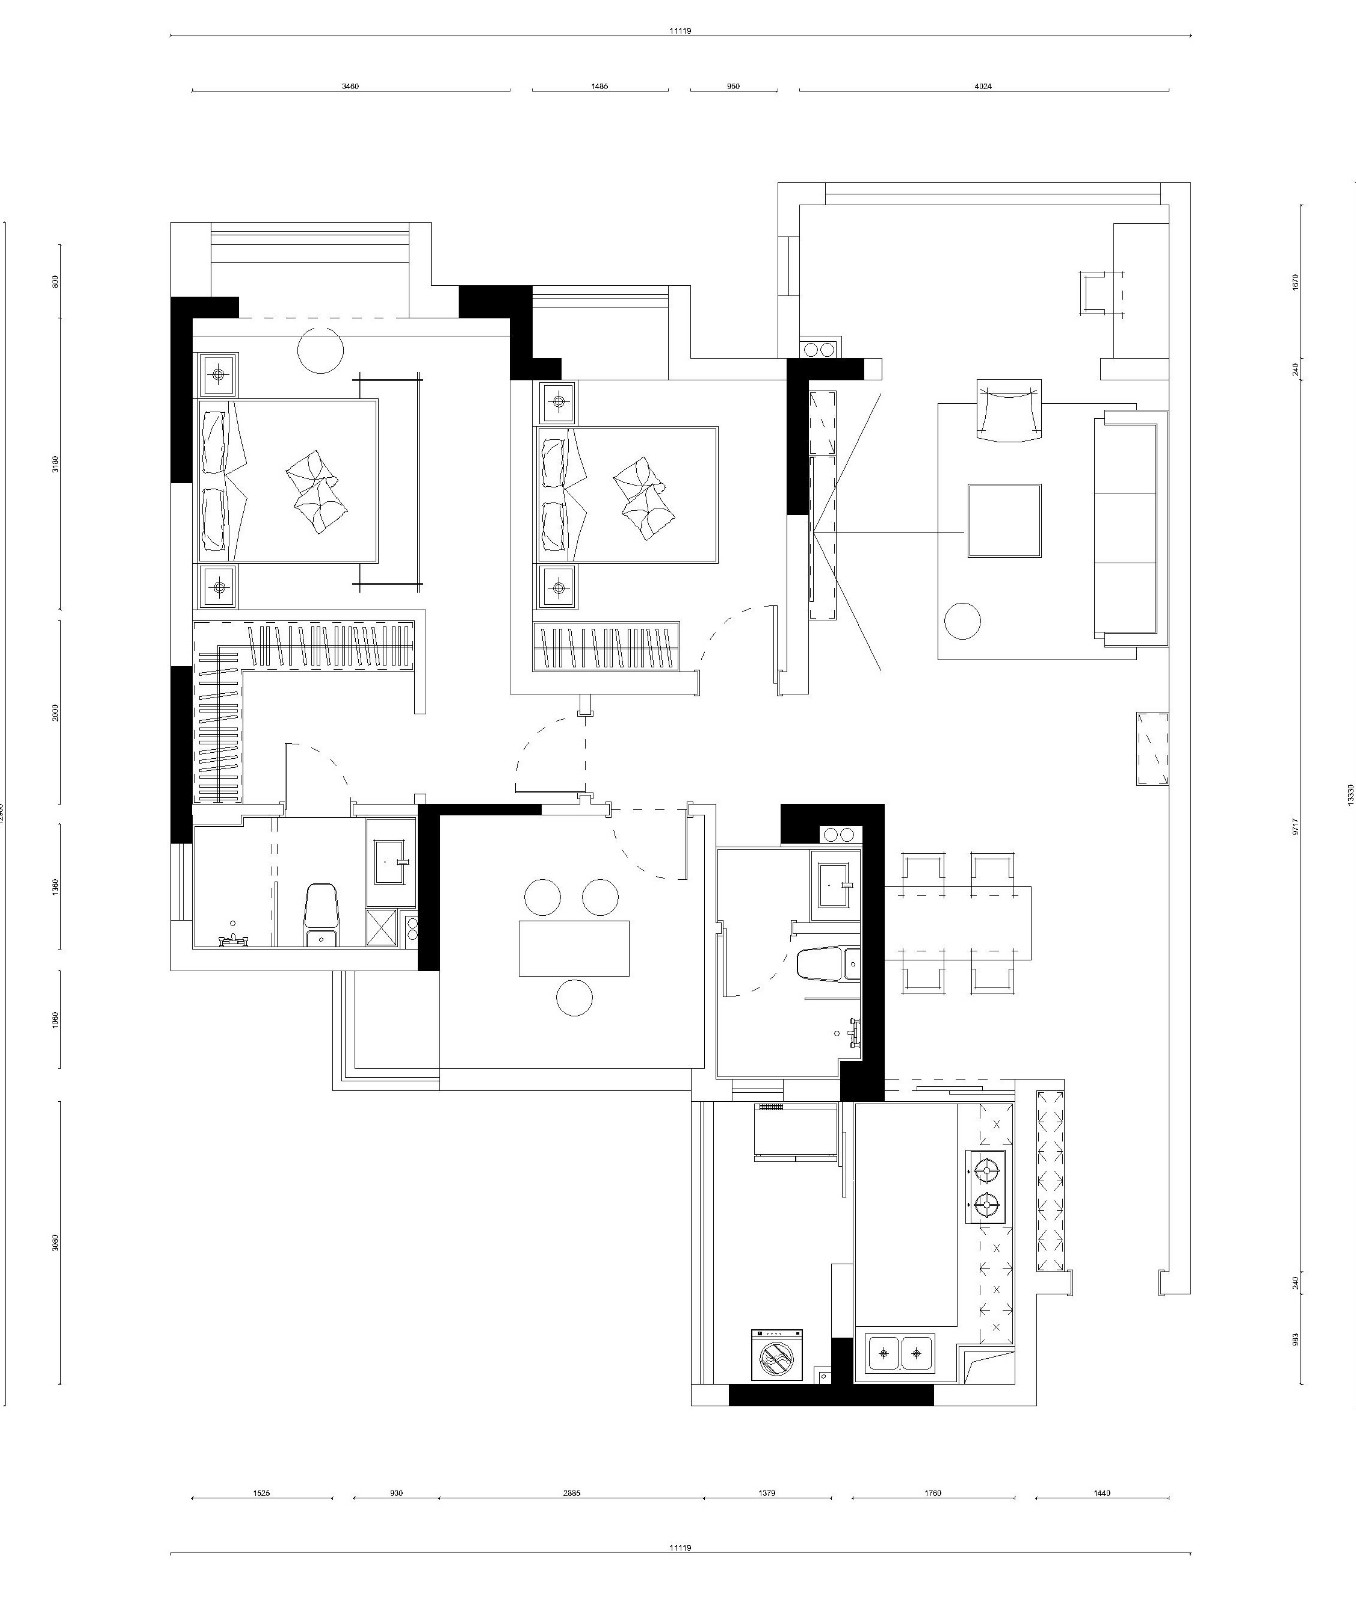 118日式三房装修效果图,层次分明的日系原木风格装修案例效果图-美广网(图1)